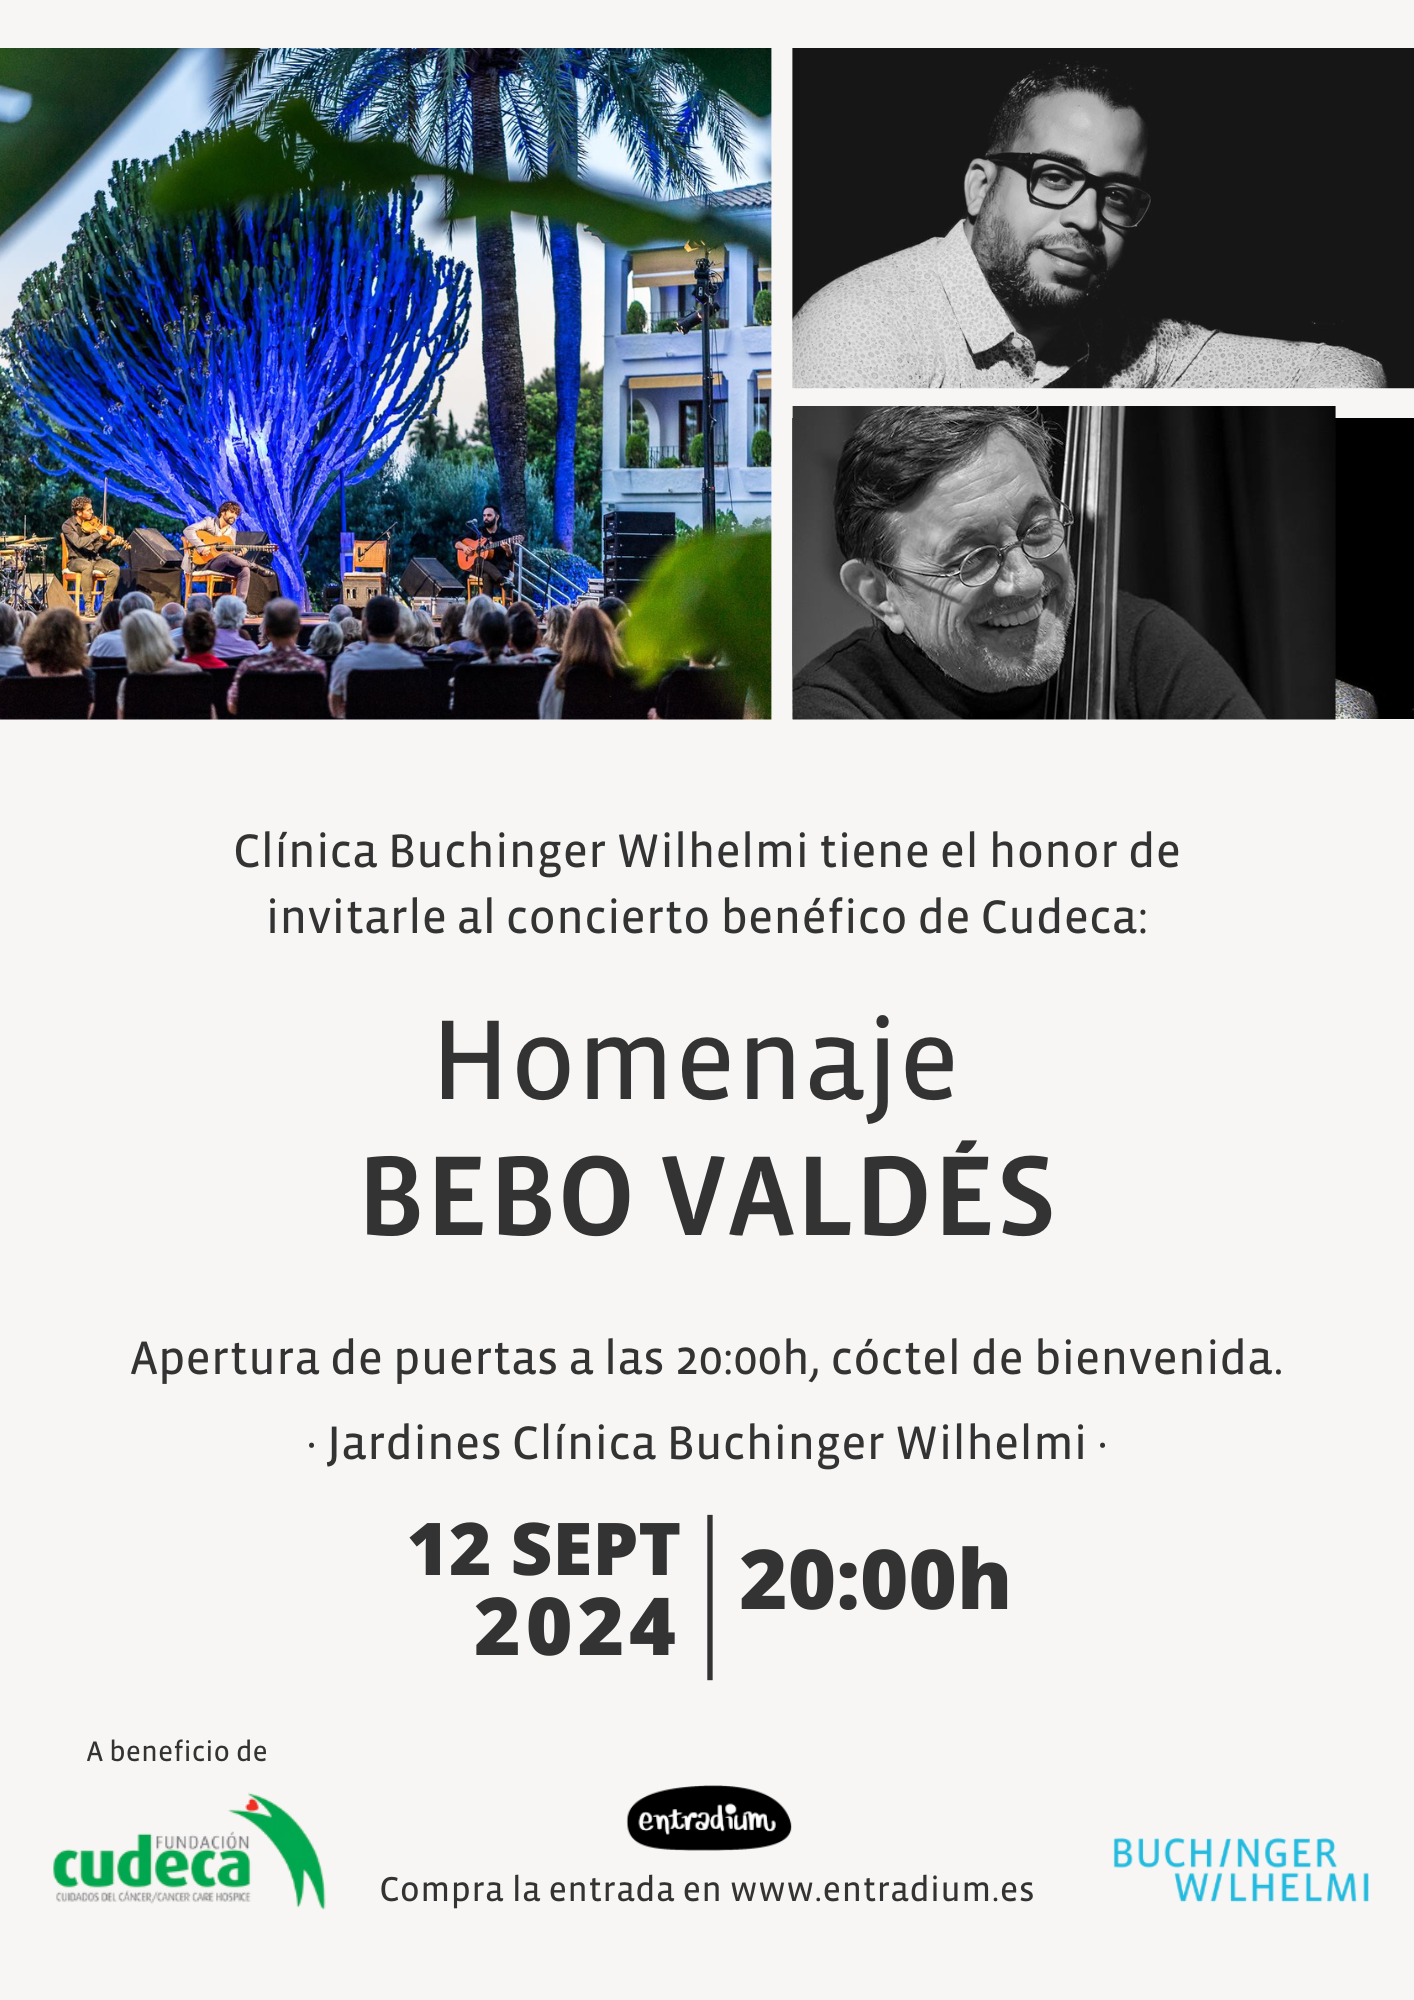 Homenaje a Bebo Valdés